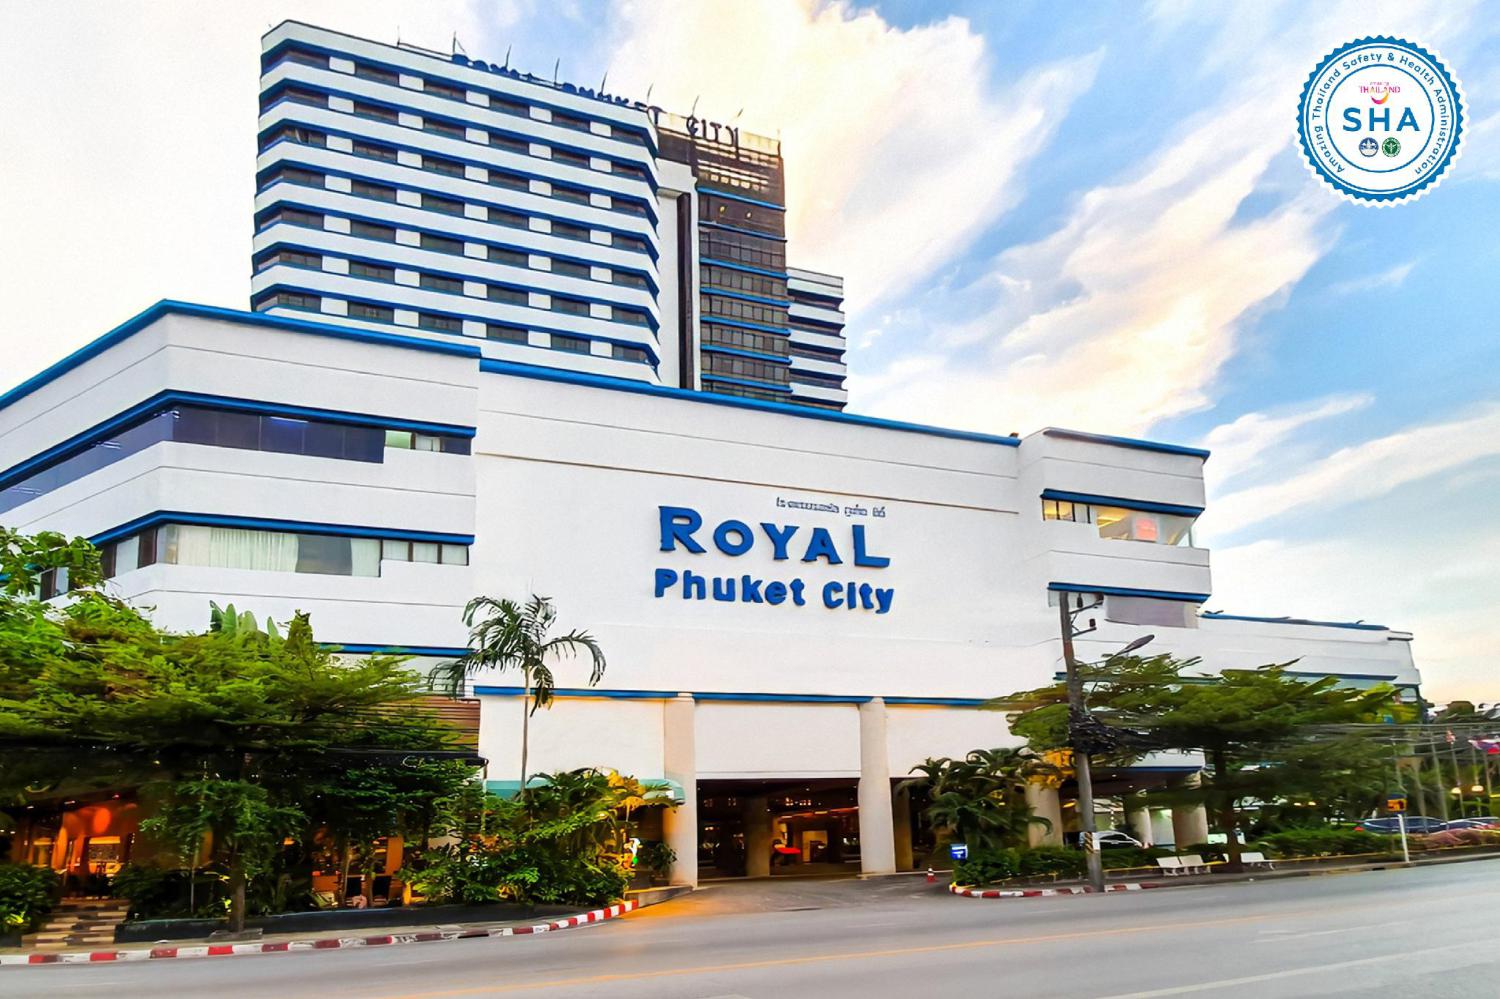 Royal Phuket City Hotel - Image 2